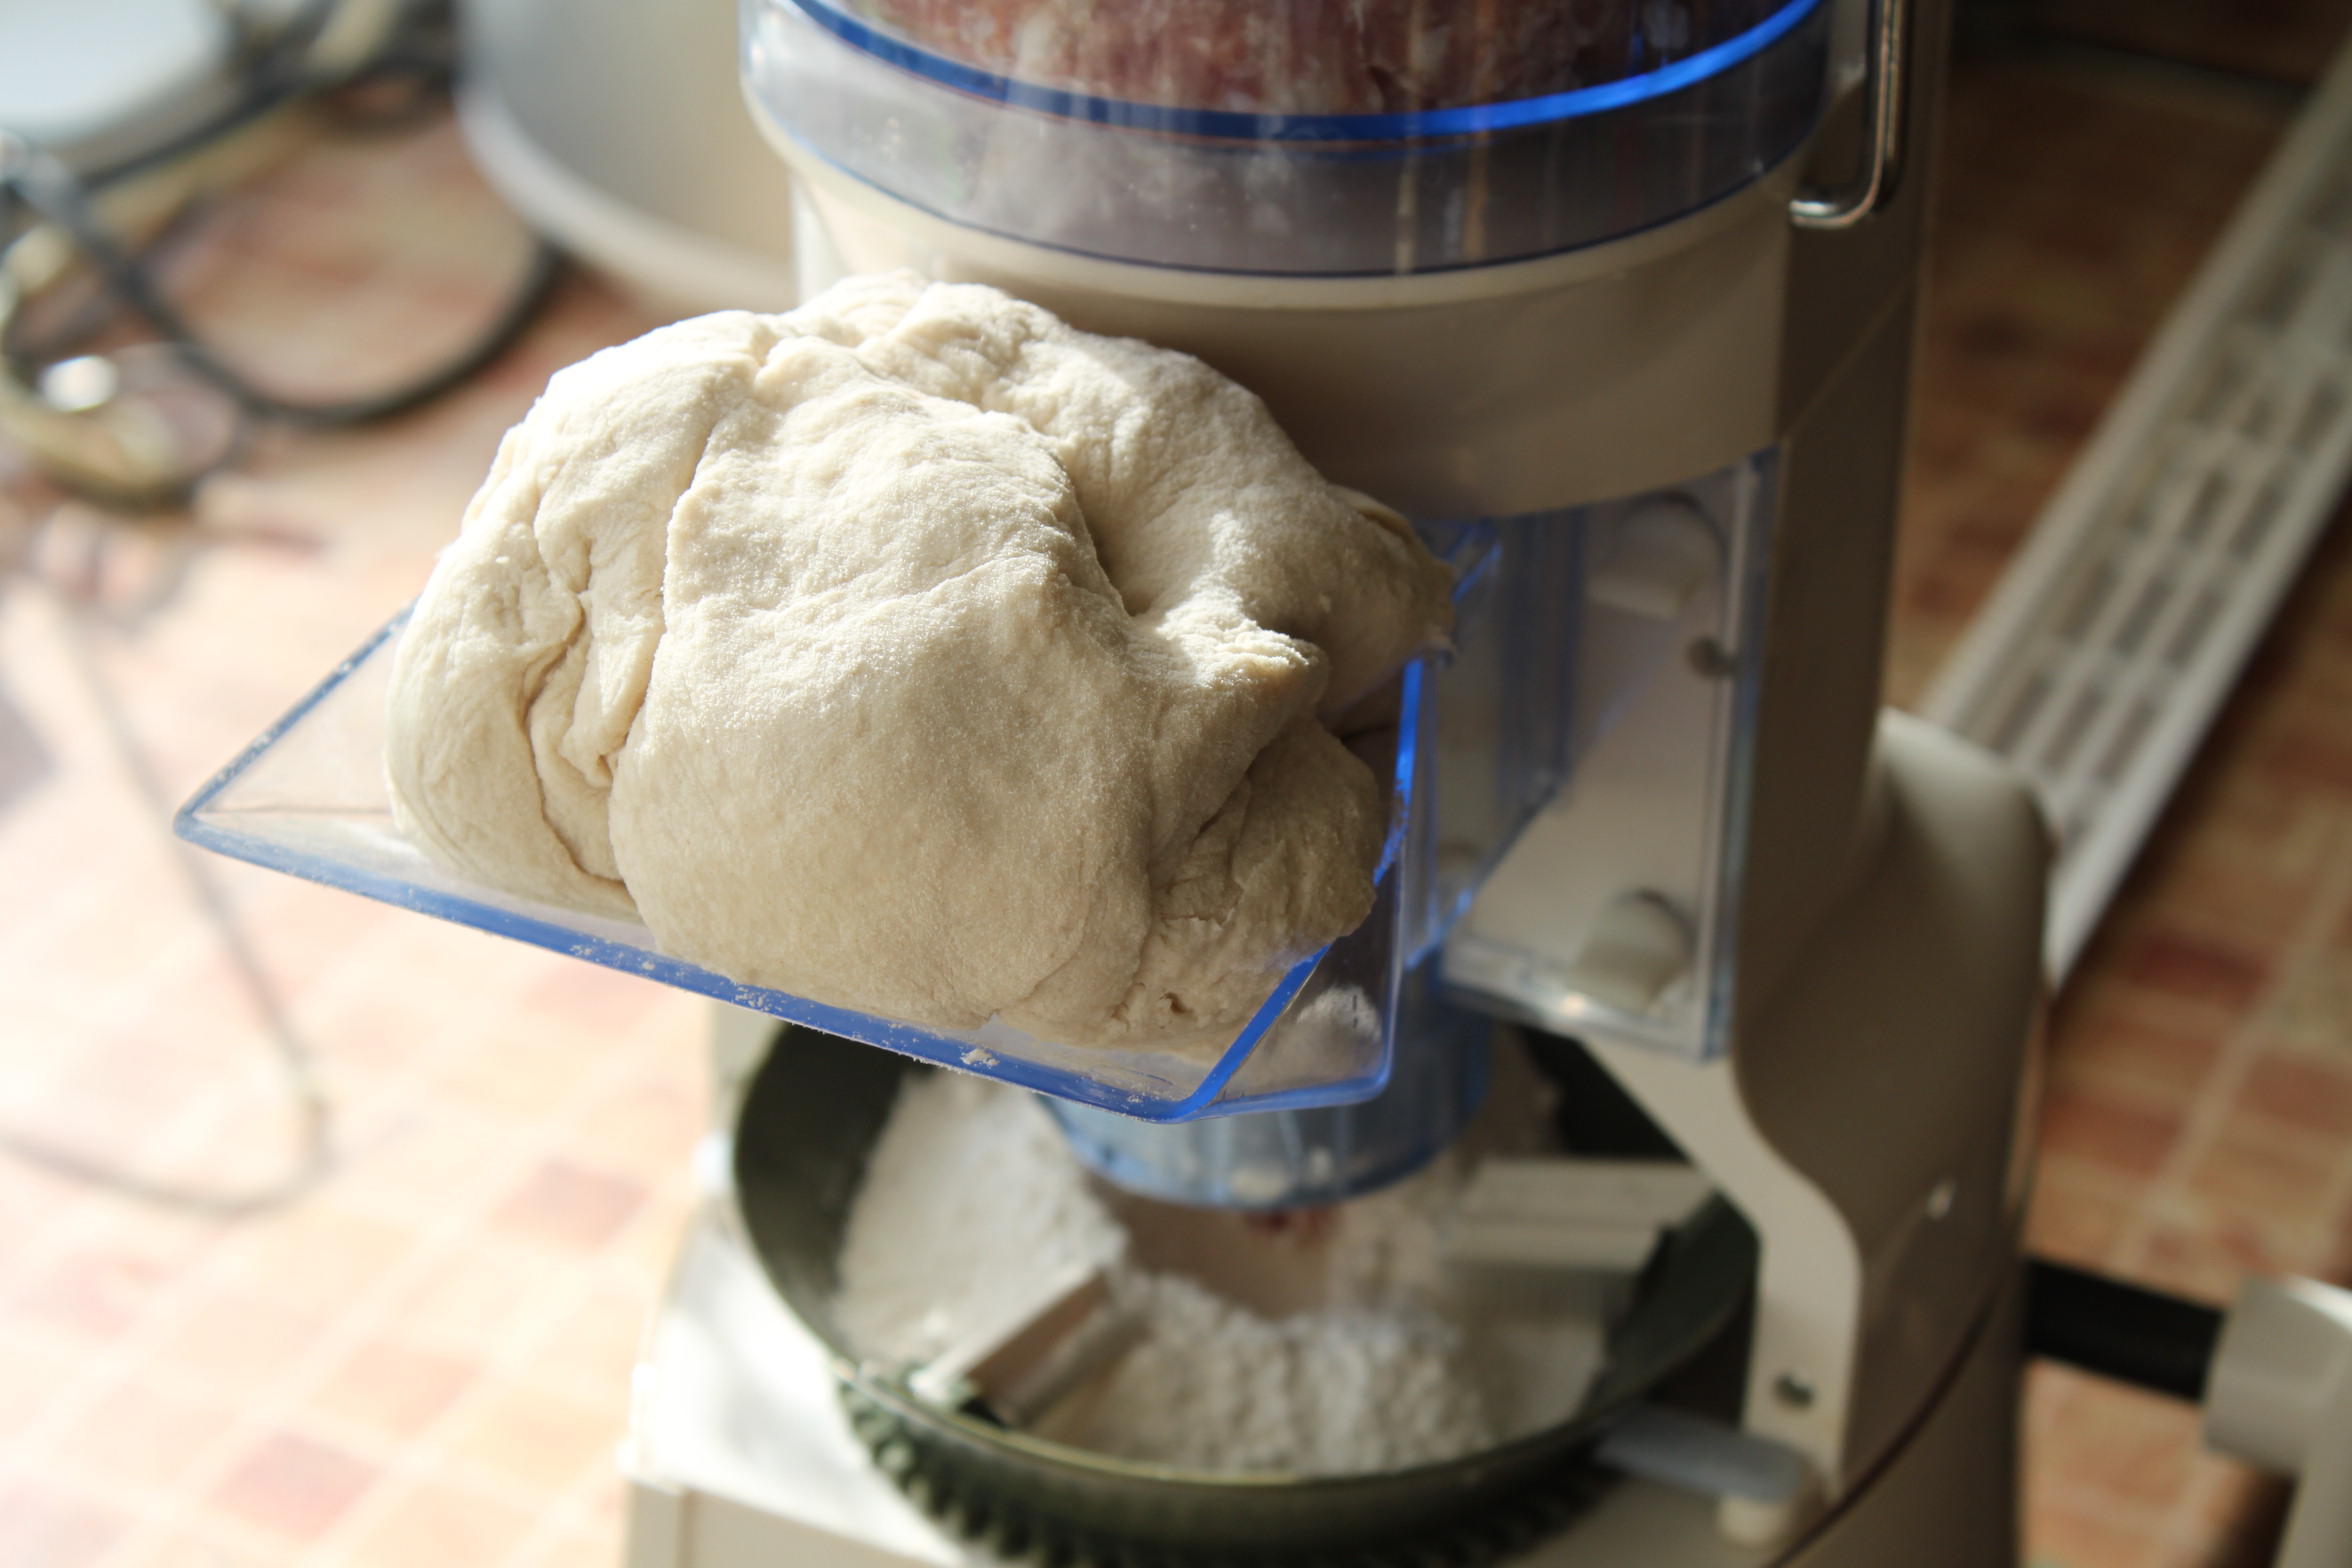 Machine for making dumplings, ravioli